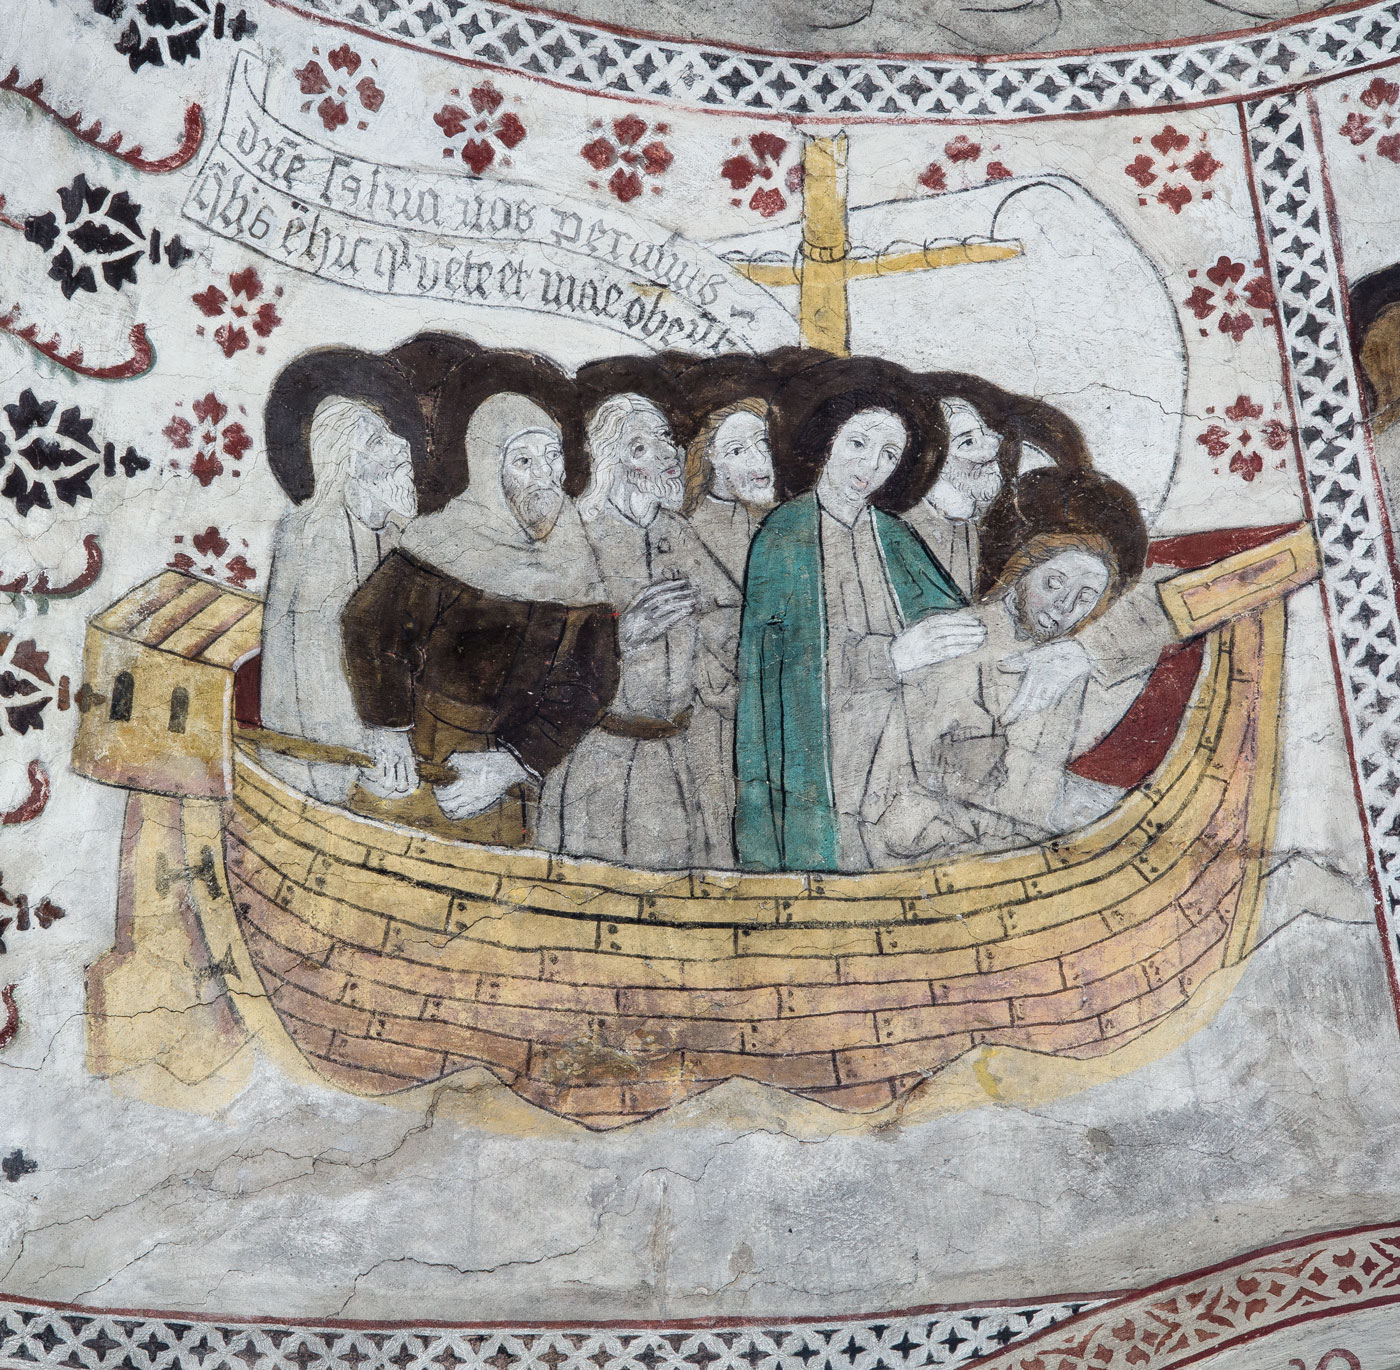 Jesus sover i skeppet under en storm - Odensala kyrka